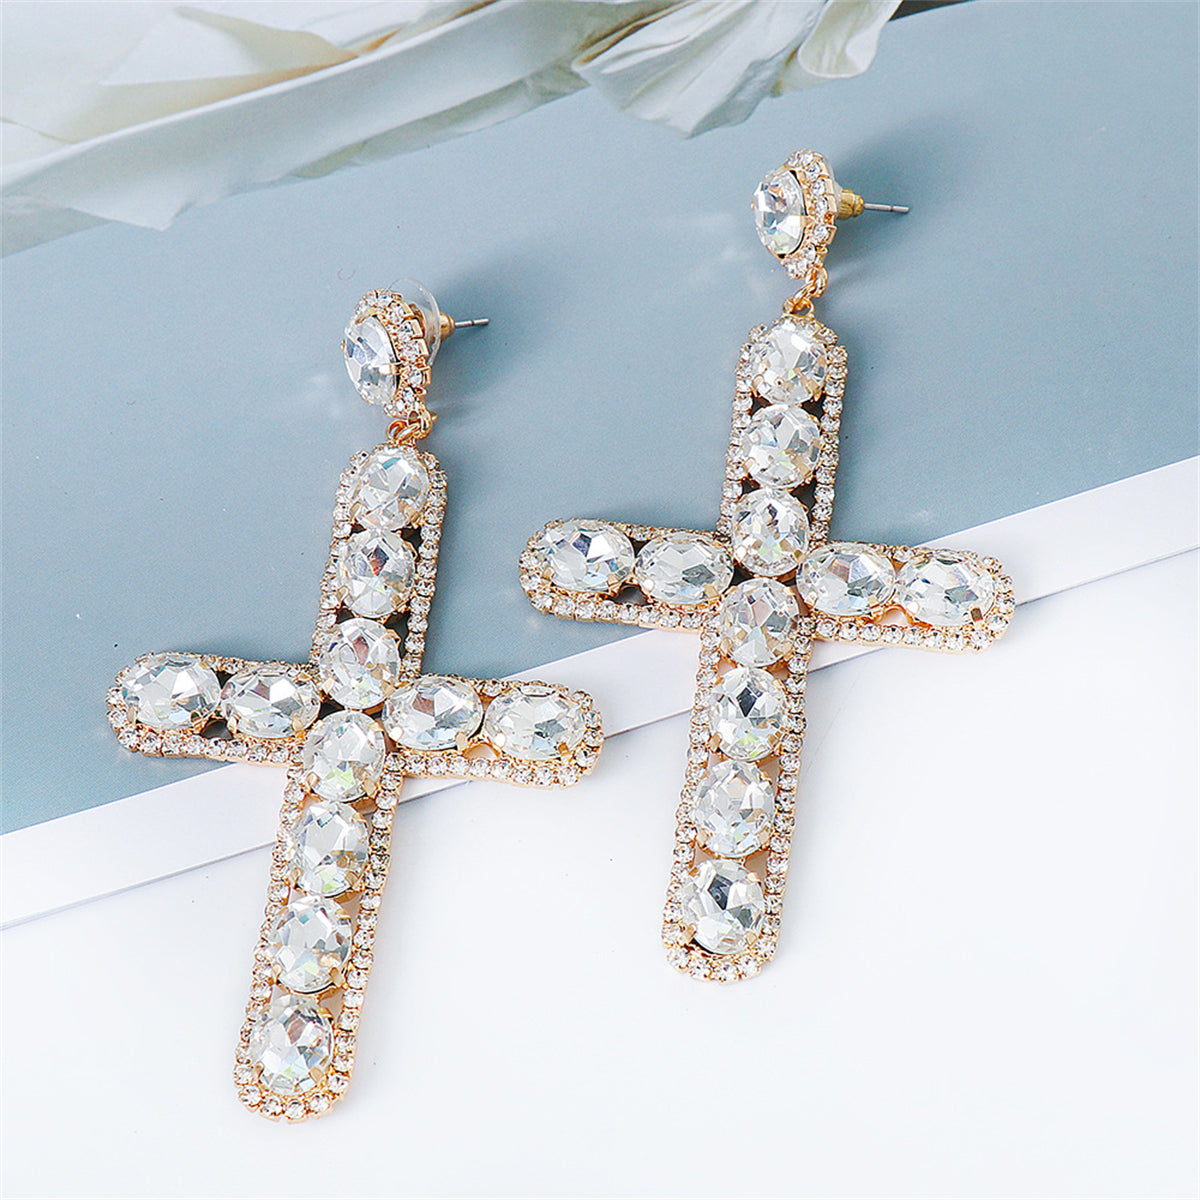 Crystal & Cubic Zirconia Cross Drop Earrings